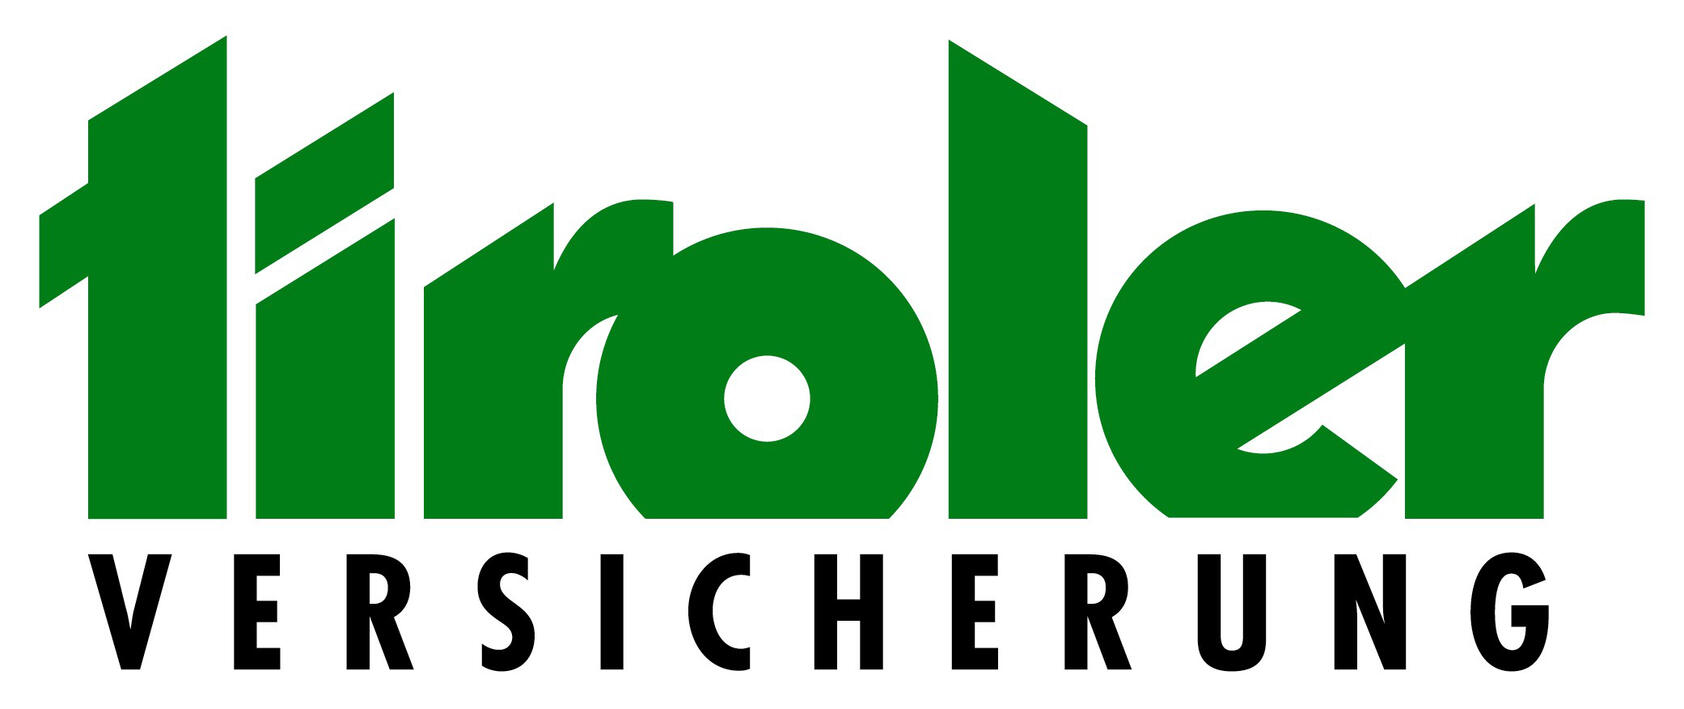 Logo TIROLER VERSICHERUNG - farbig